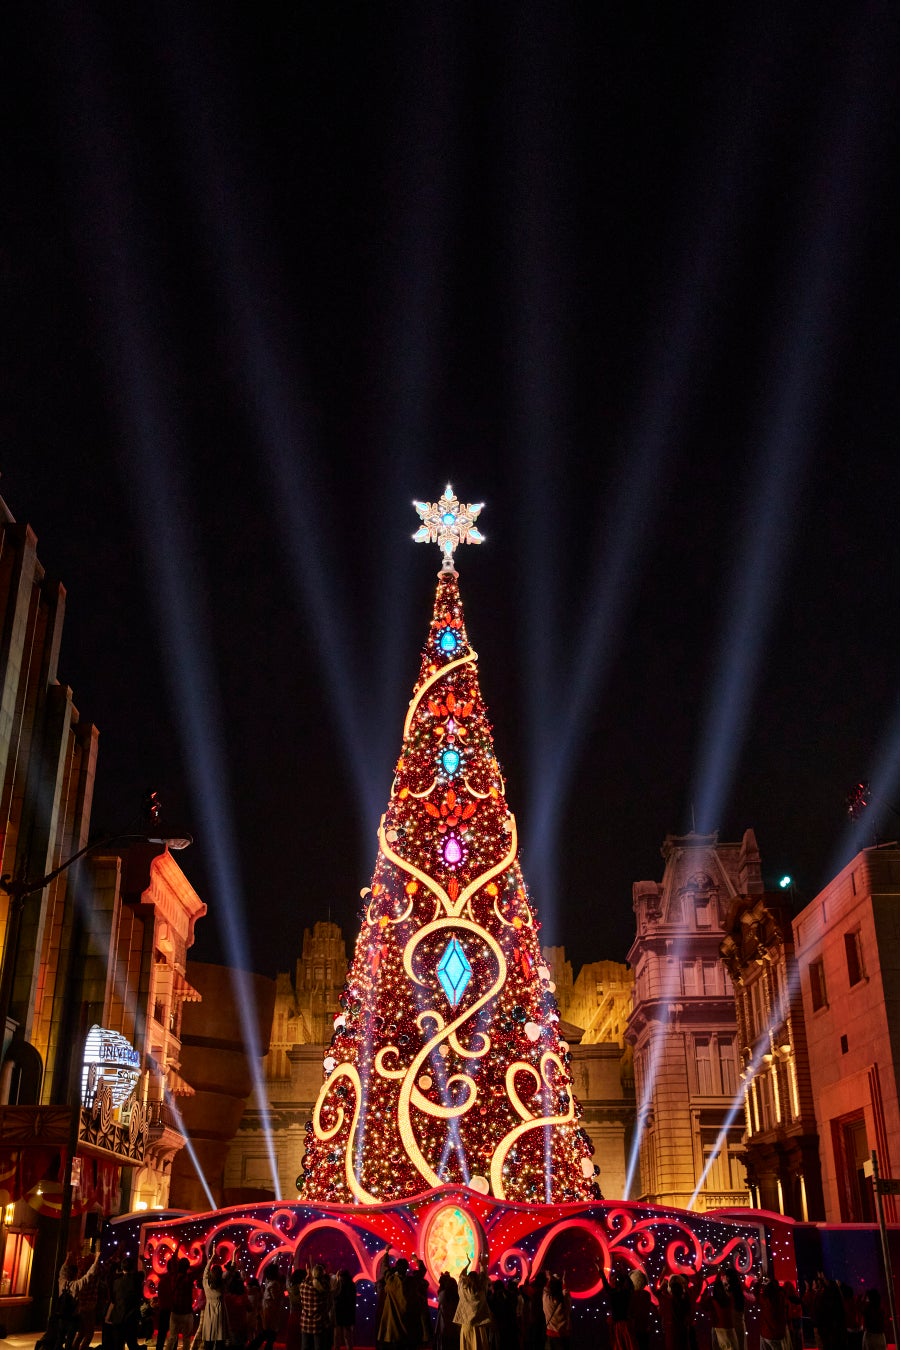 どこよりもアツい！“超興奮のクリスマス”、明日開幕世界一の輝きを誇るクリスマス・ツリー初点灯